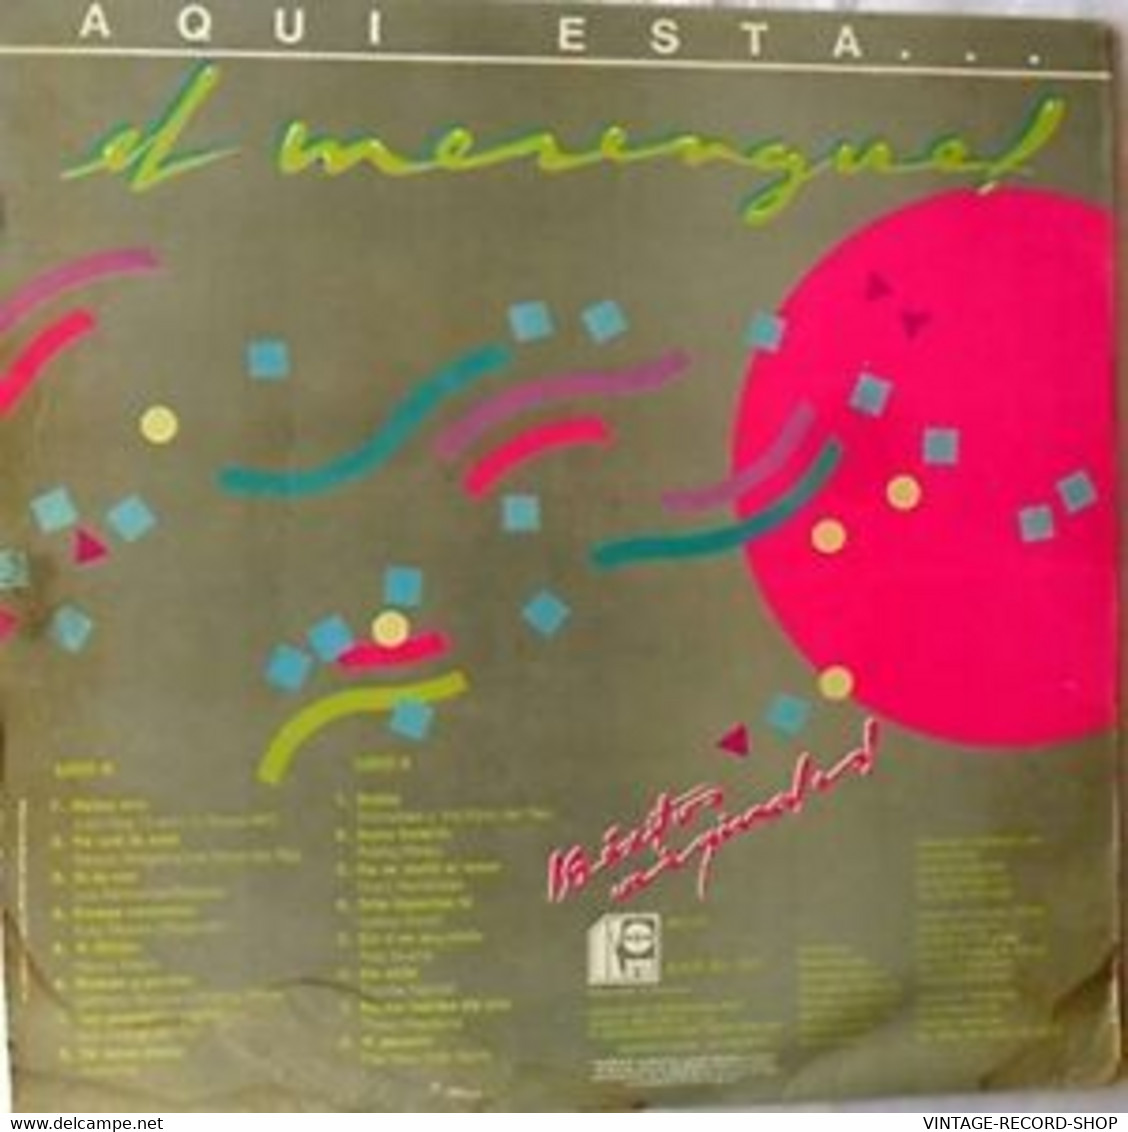 AQUI ESTA EL MERENGUE-LOS 16 EXITOS ORIGINALES-KAREN VENEZUELA 1995 VG++ - Altri - Musica Spagnola